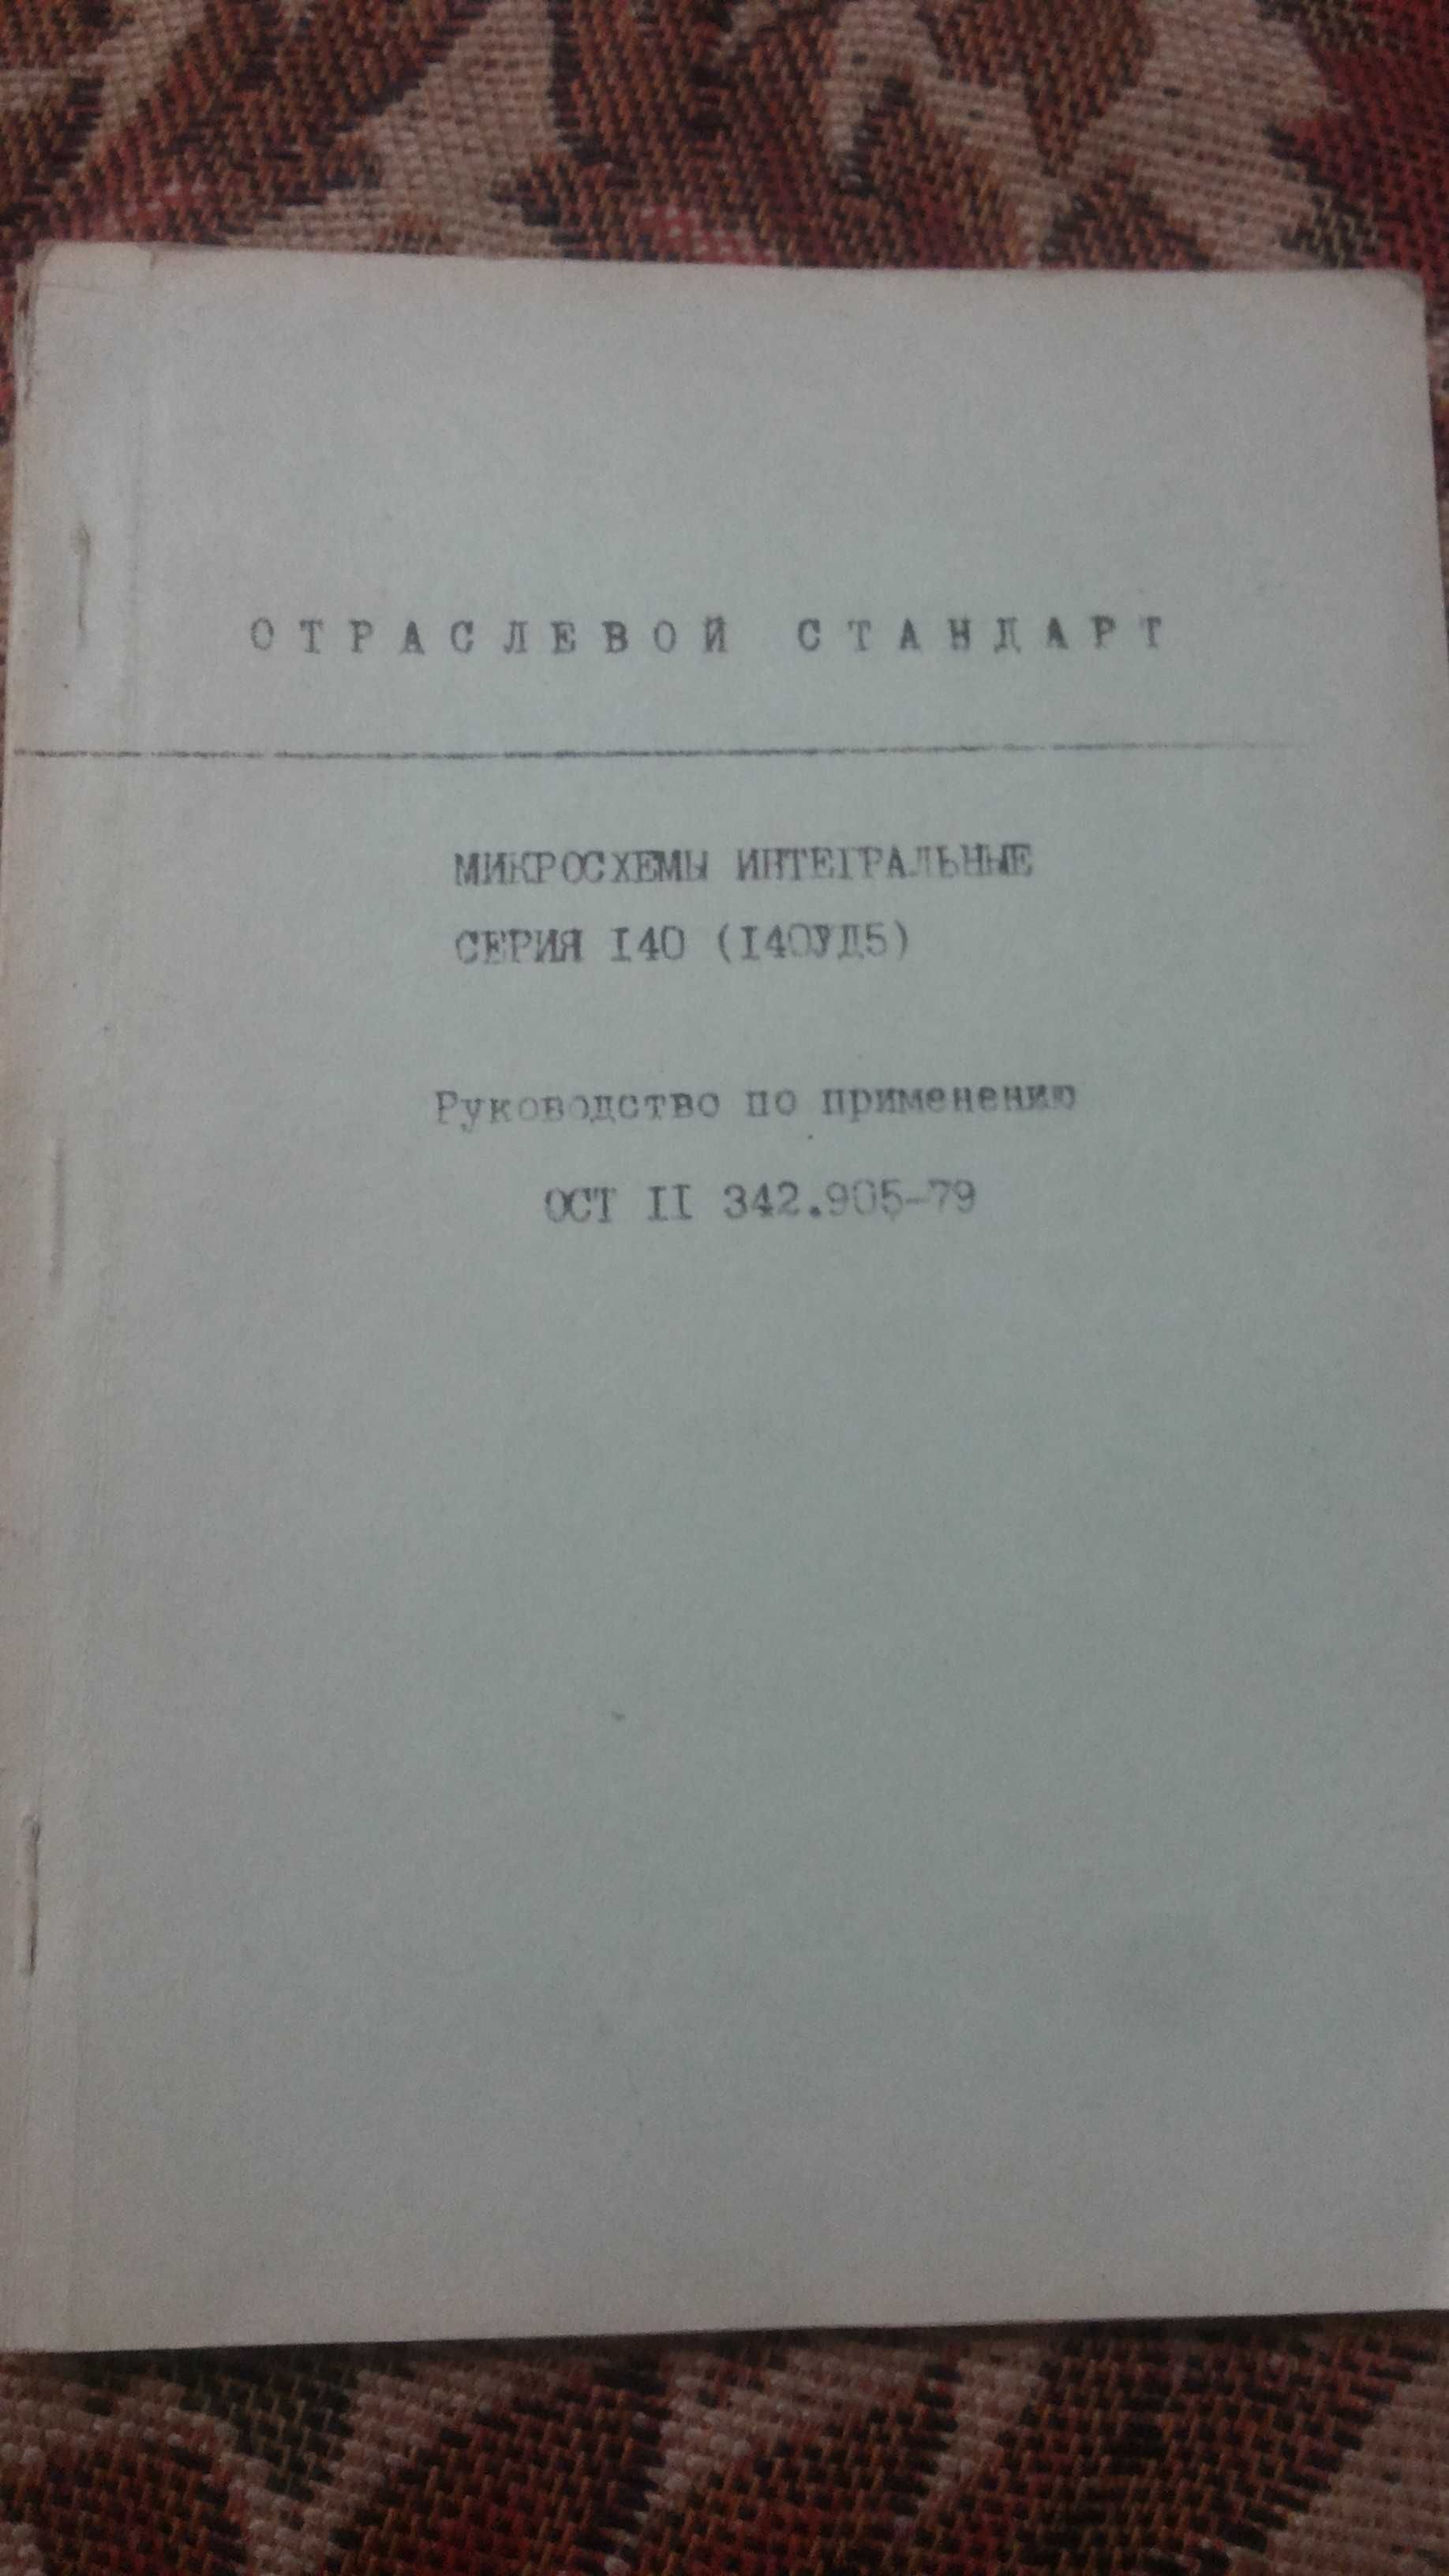 Отраслевые стандарты на микросхемы времен СССР